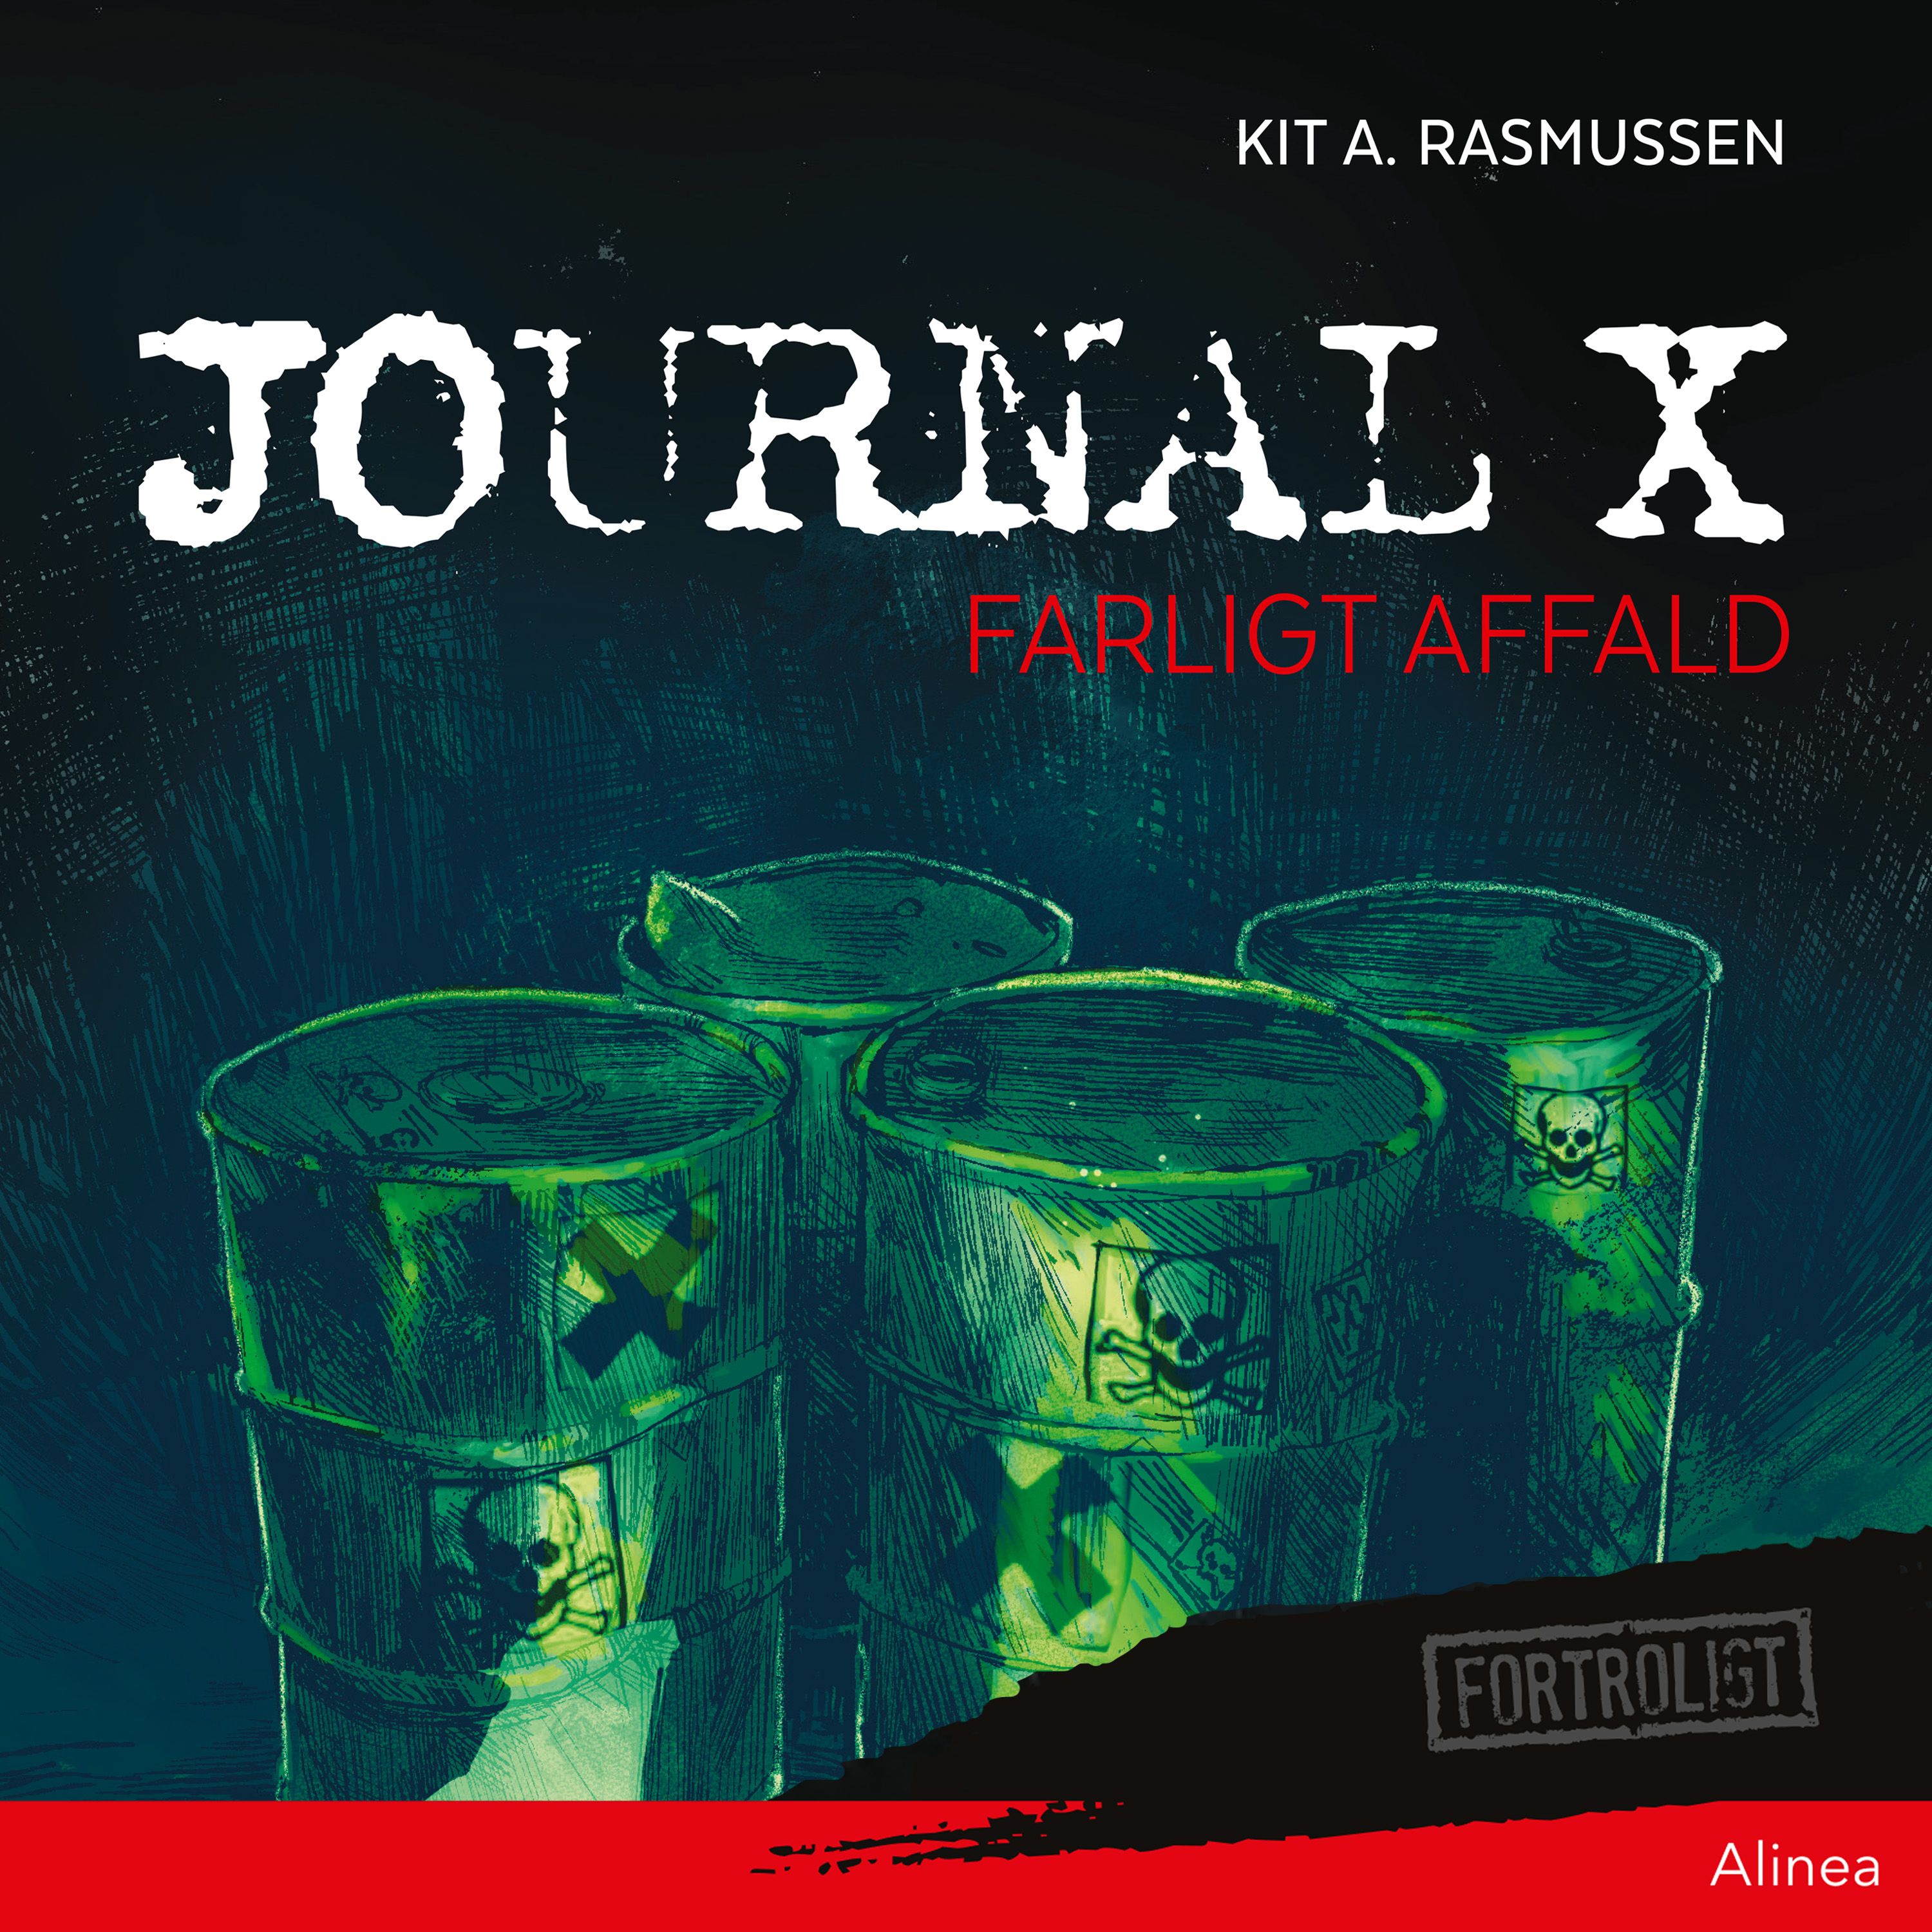 Journal X - Farligt affald, ljudbok av Kit A. Rasmussen